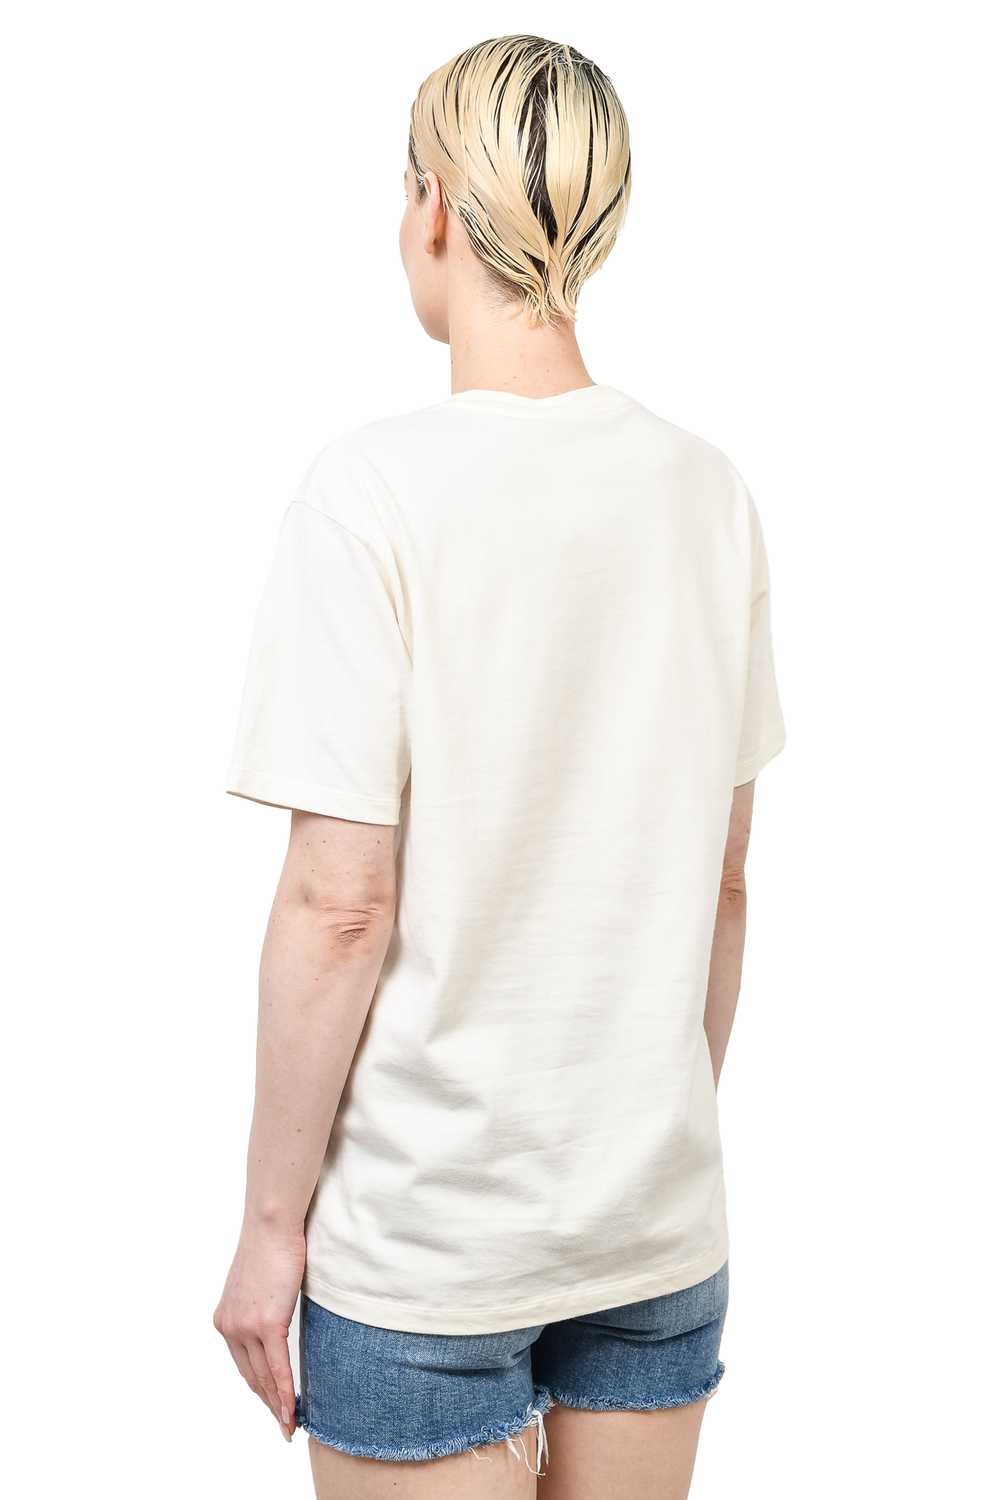 Gucci White Cotton 'Blade' Print T-Shirt Size XS - image 3